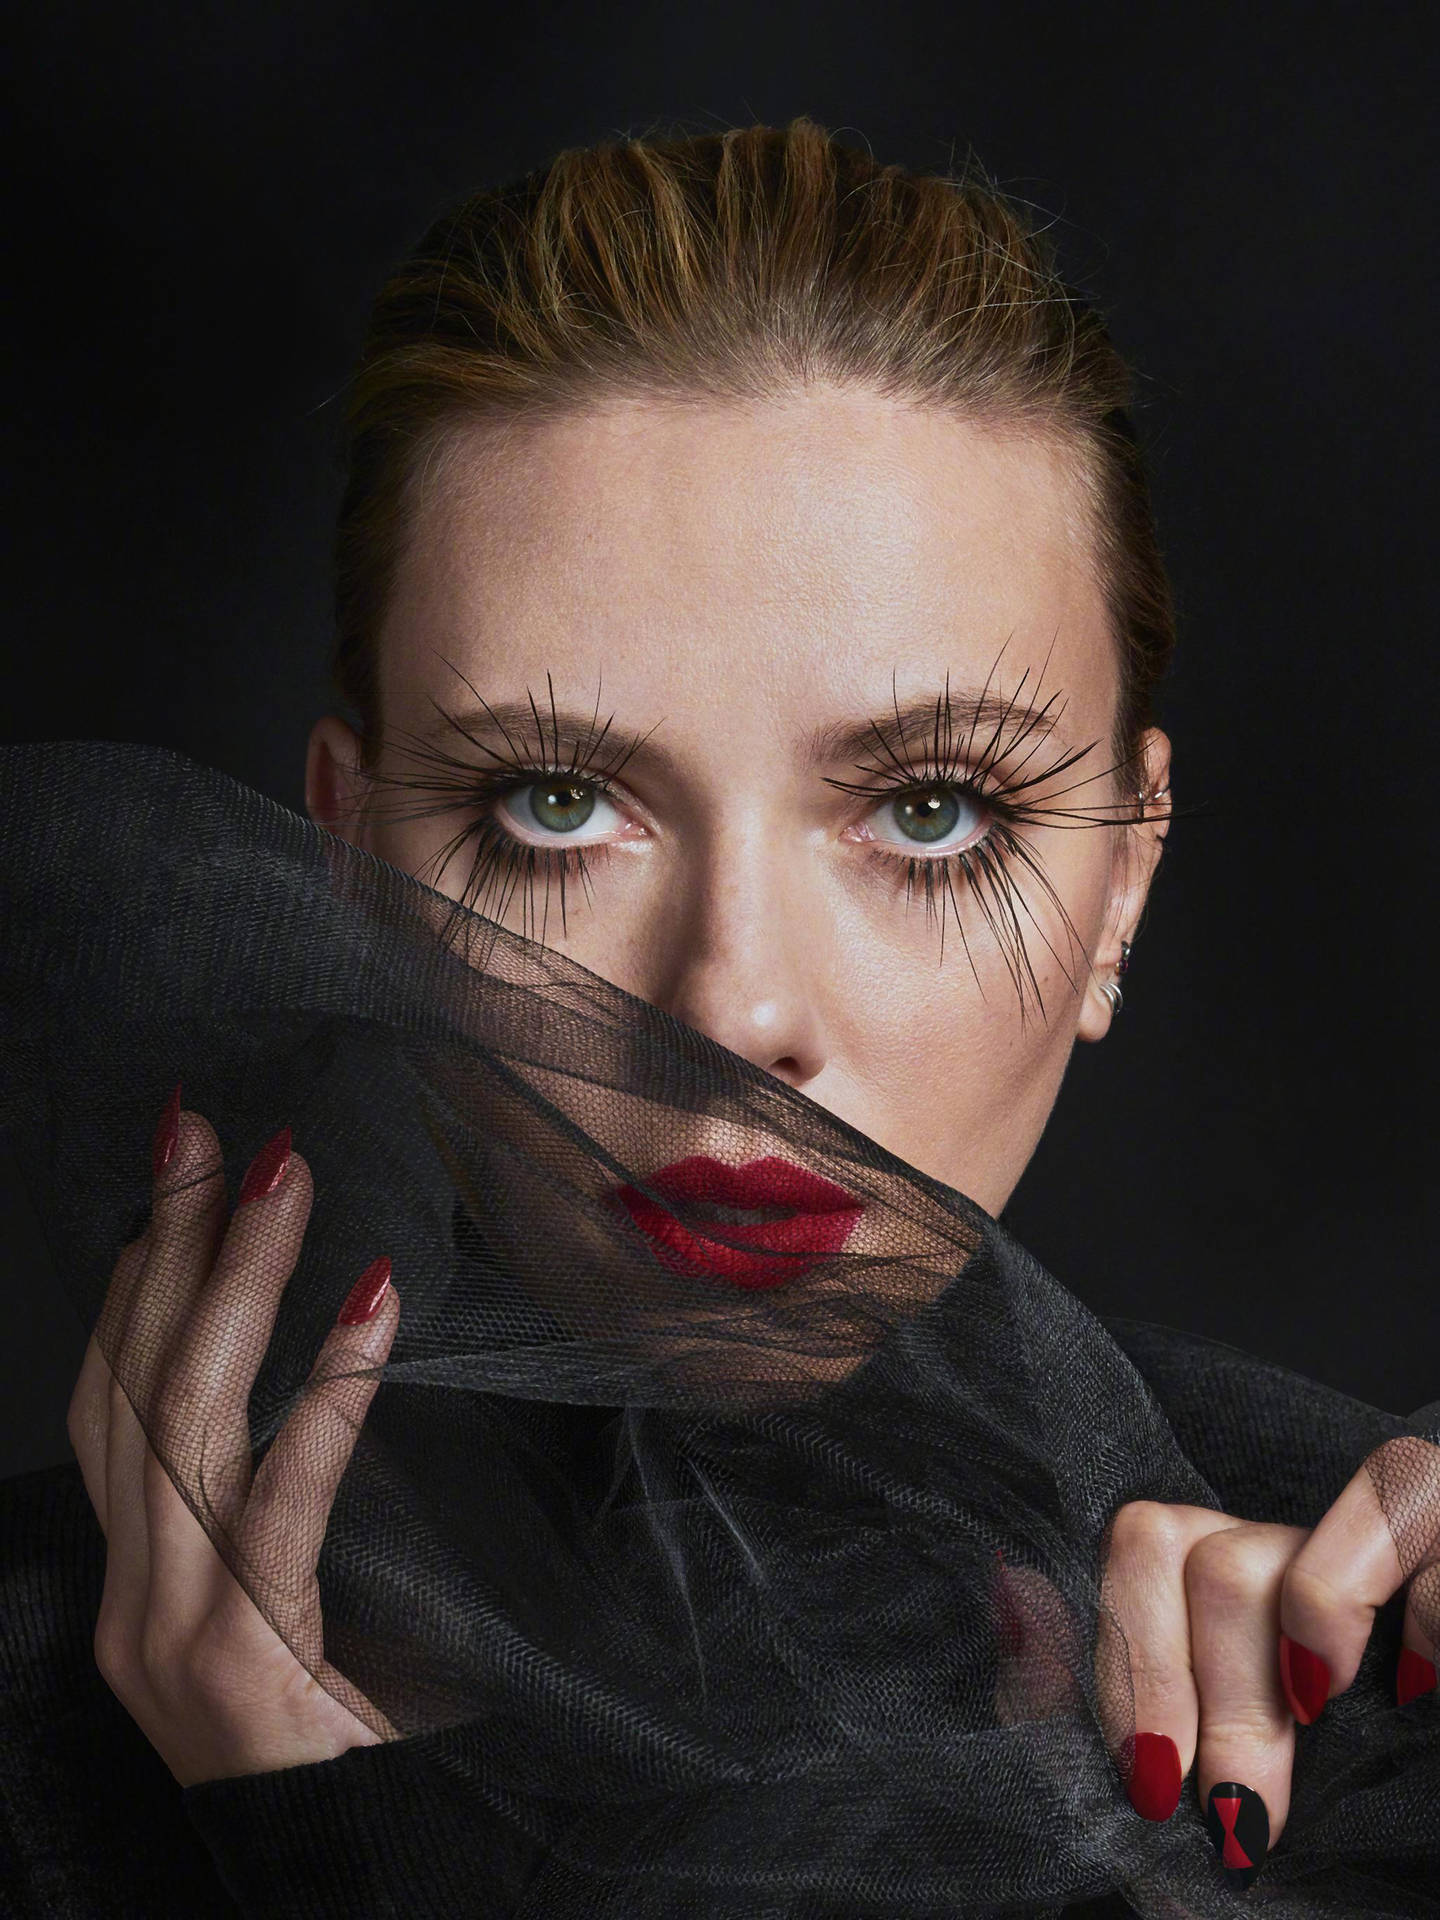 Scarlett Johansson In A Black Widow Costume Wallpaper